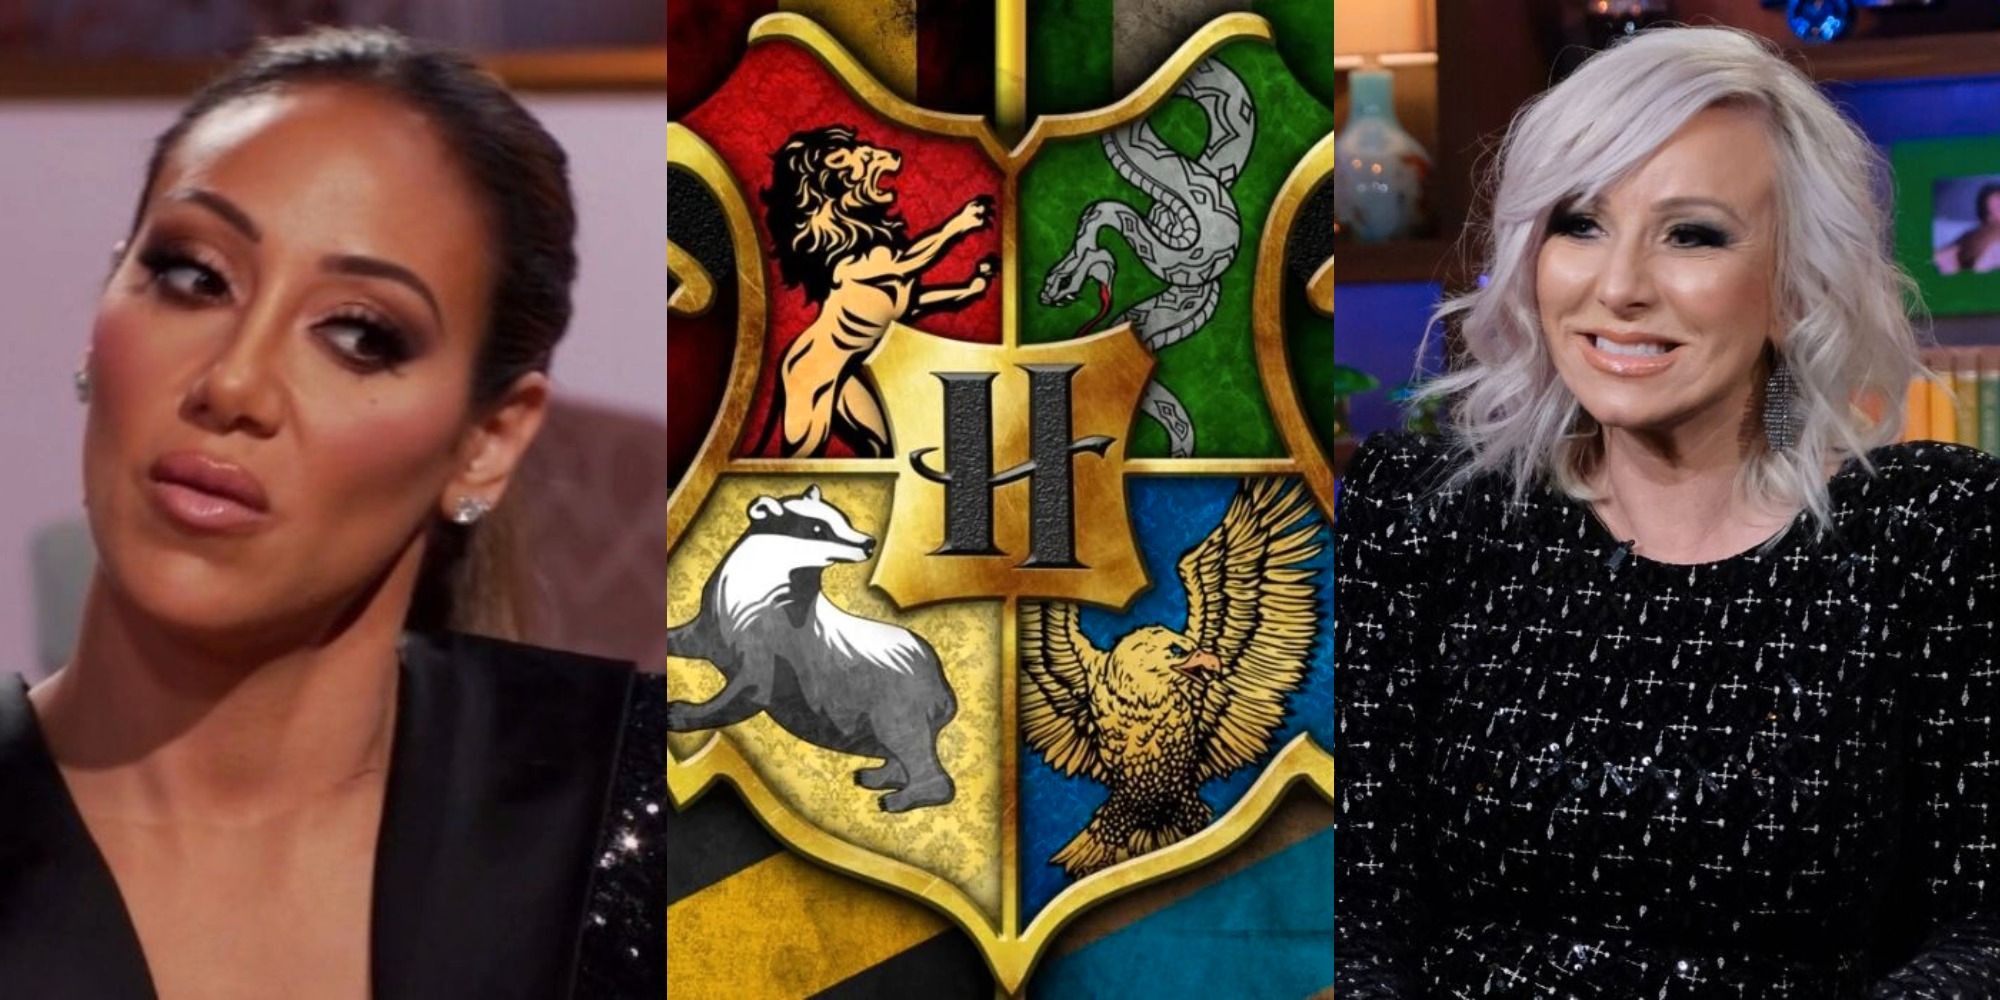 Amas de casa reales de Nueva Jersey clasificadas en sus casas de Hogwarts